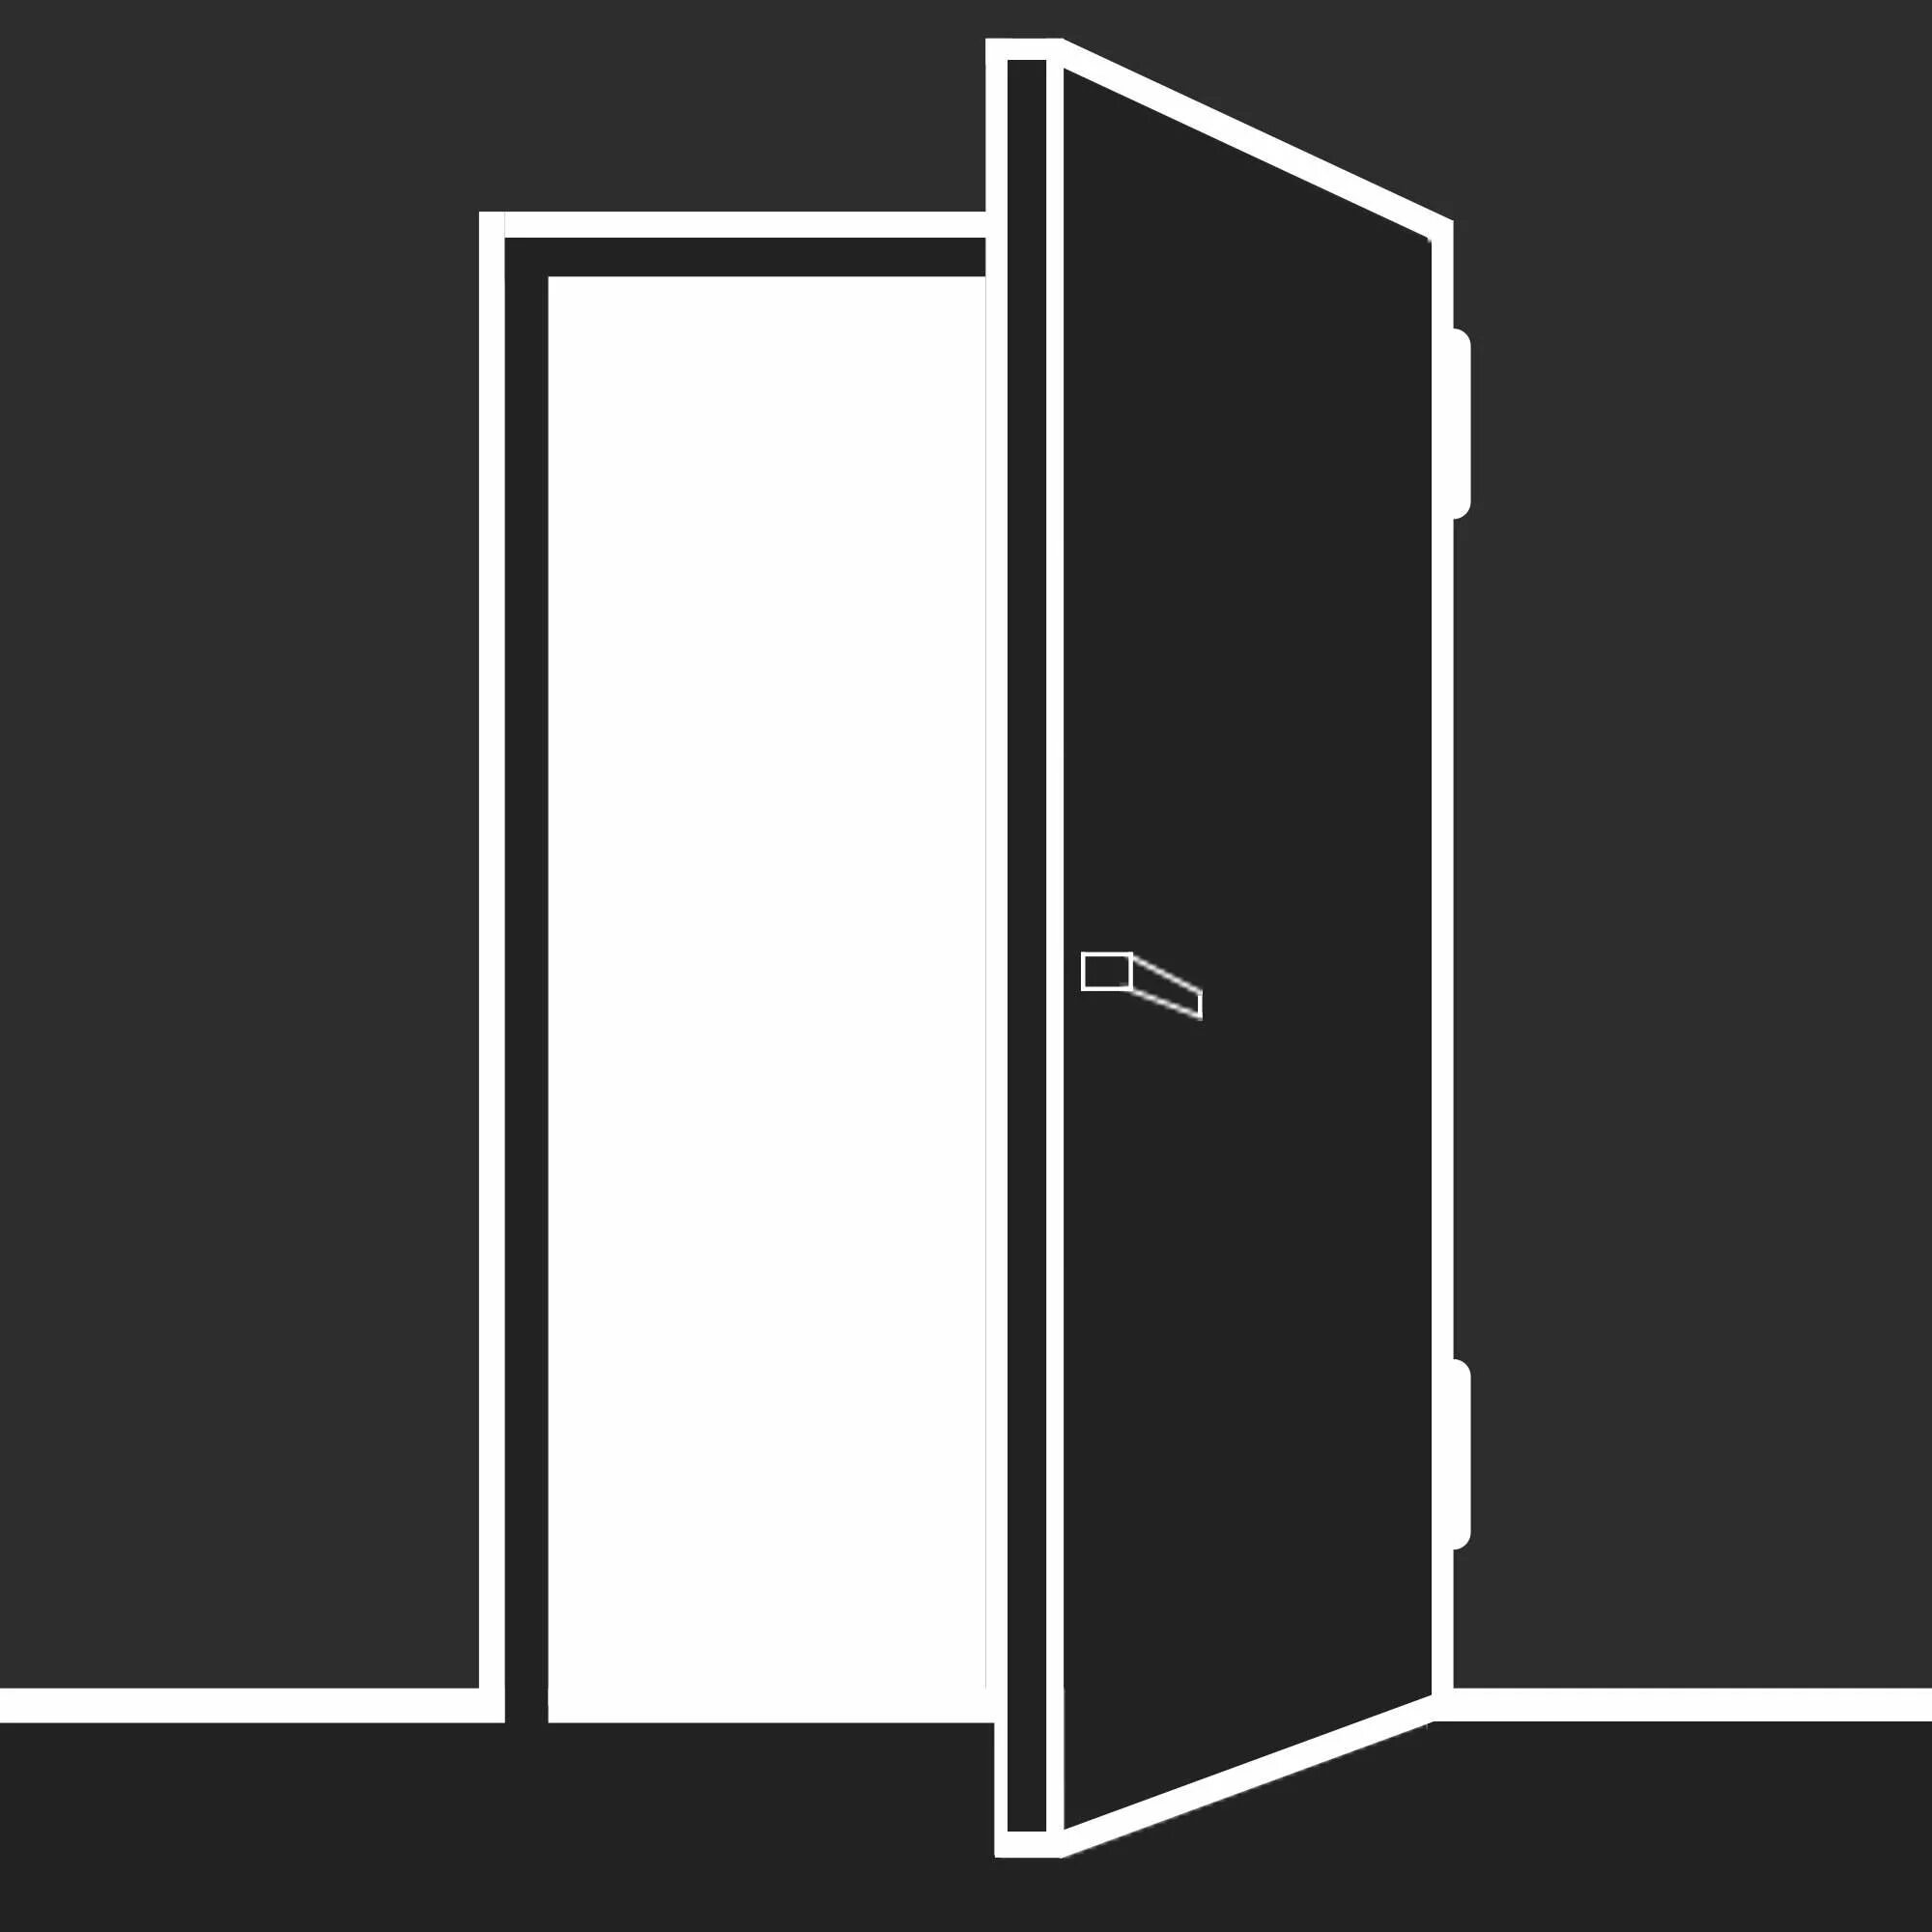 Открытая дверь вк. Дверь сбоку вектор. Открытая дверь. Логотип двери. Открытые двери вектор.